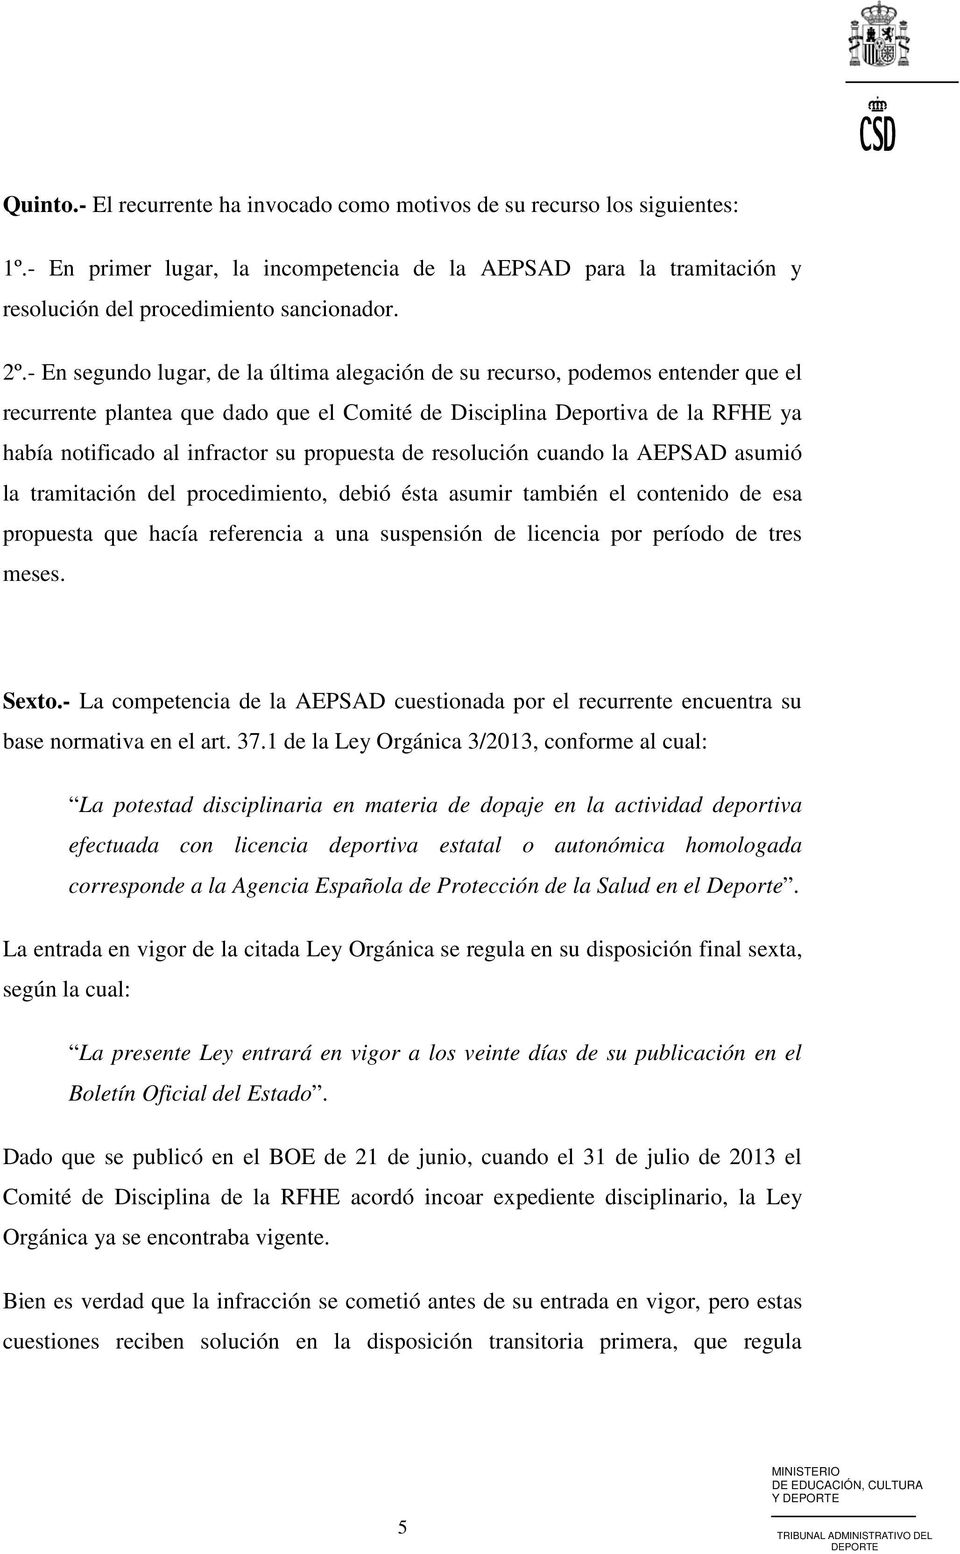 propuesta de resolución cuando la AEPSAD asumió la tramitación del procedimiento, debió ésta asumir también el contenido de esa propuesta que hacía referencia a una suspensión de licencia por período